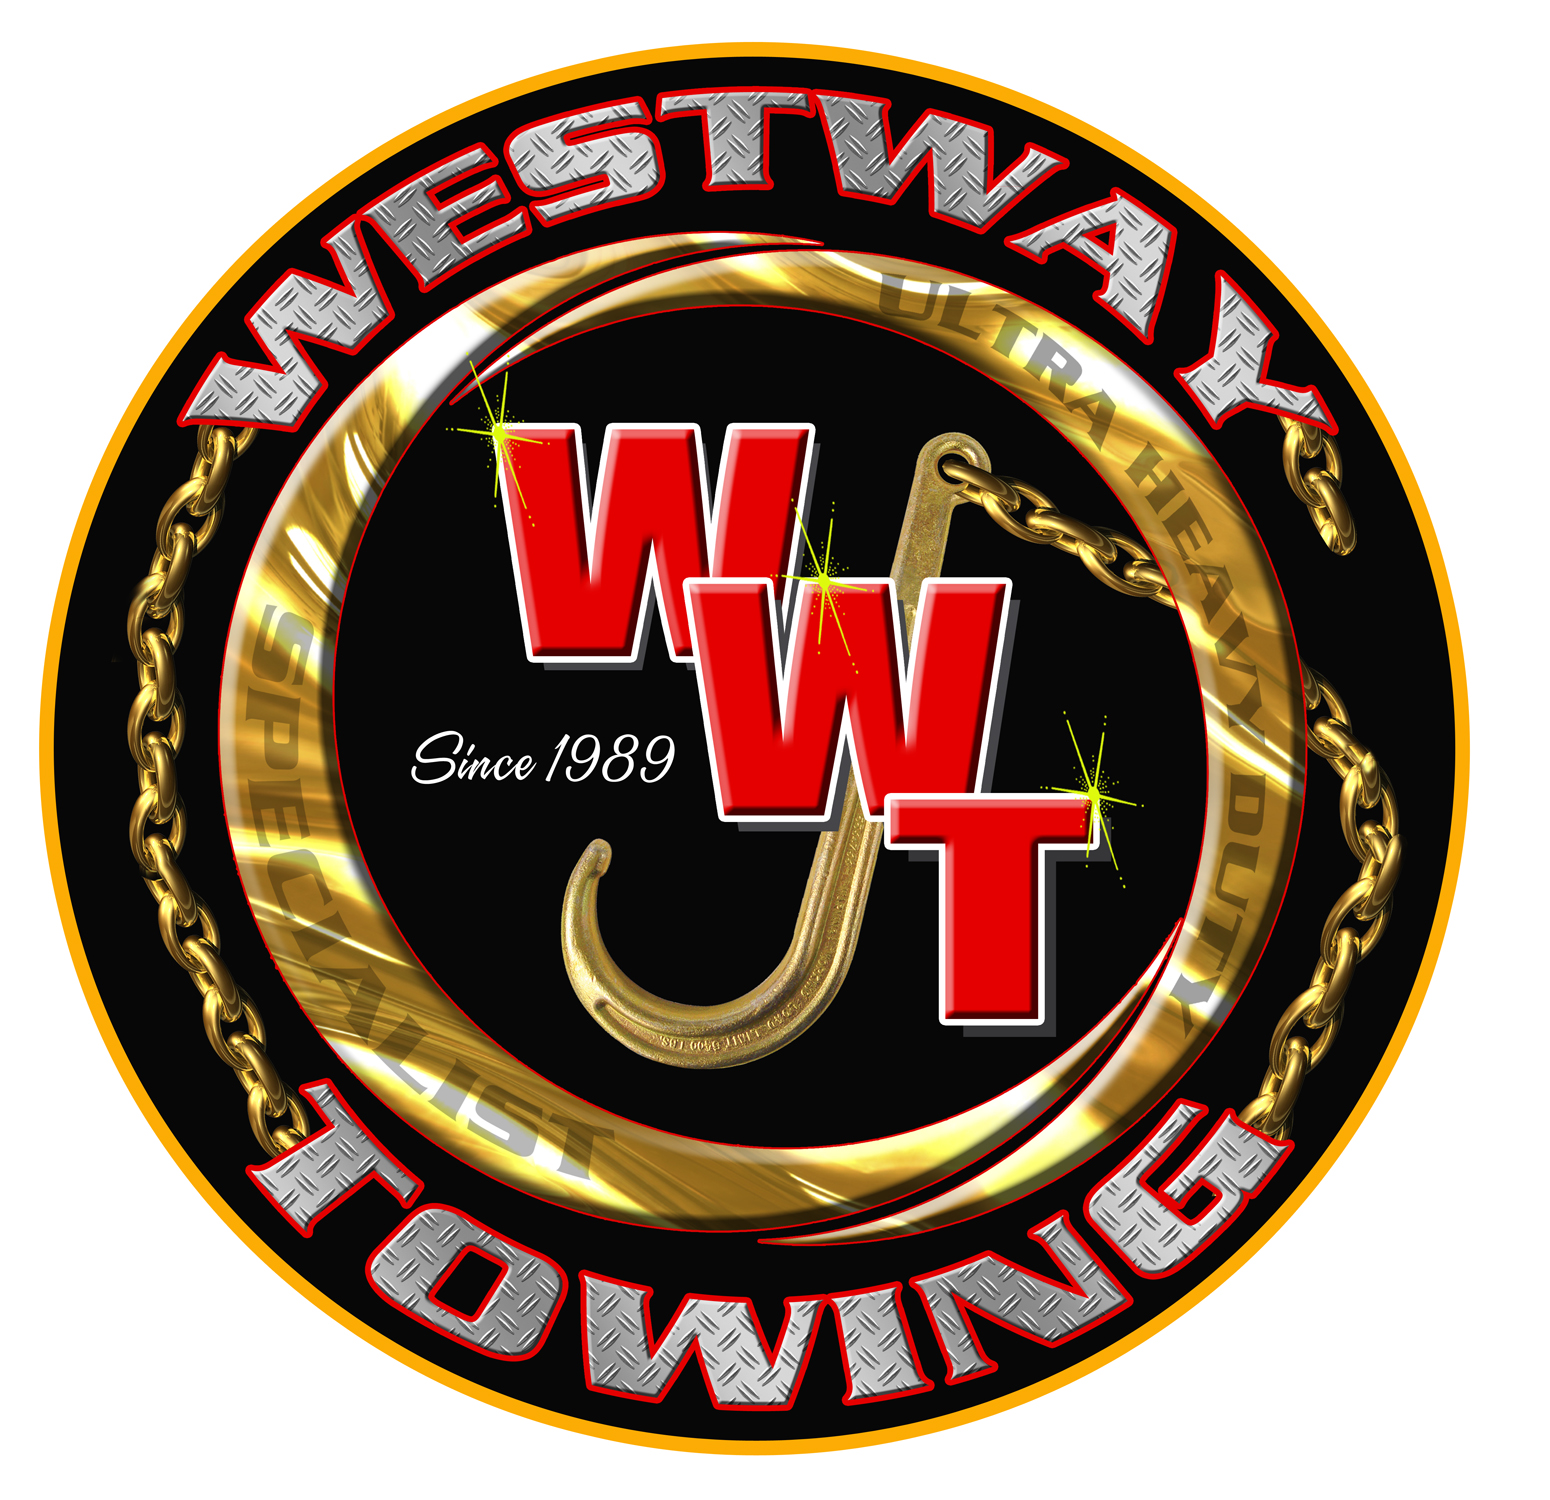 Westway Towing